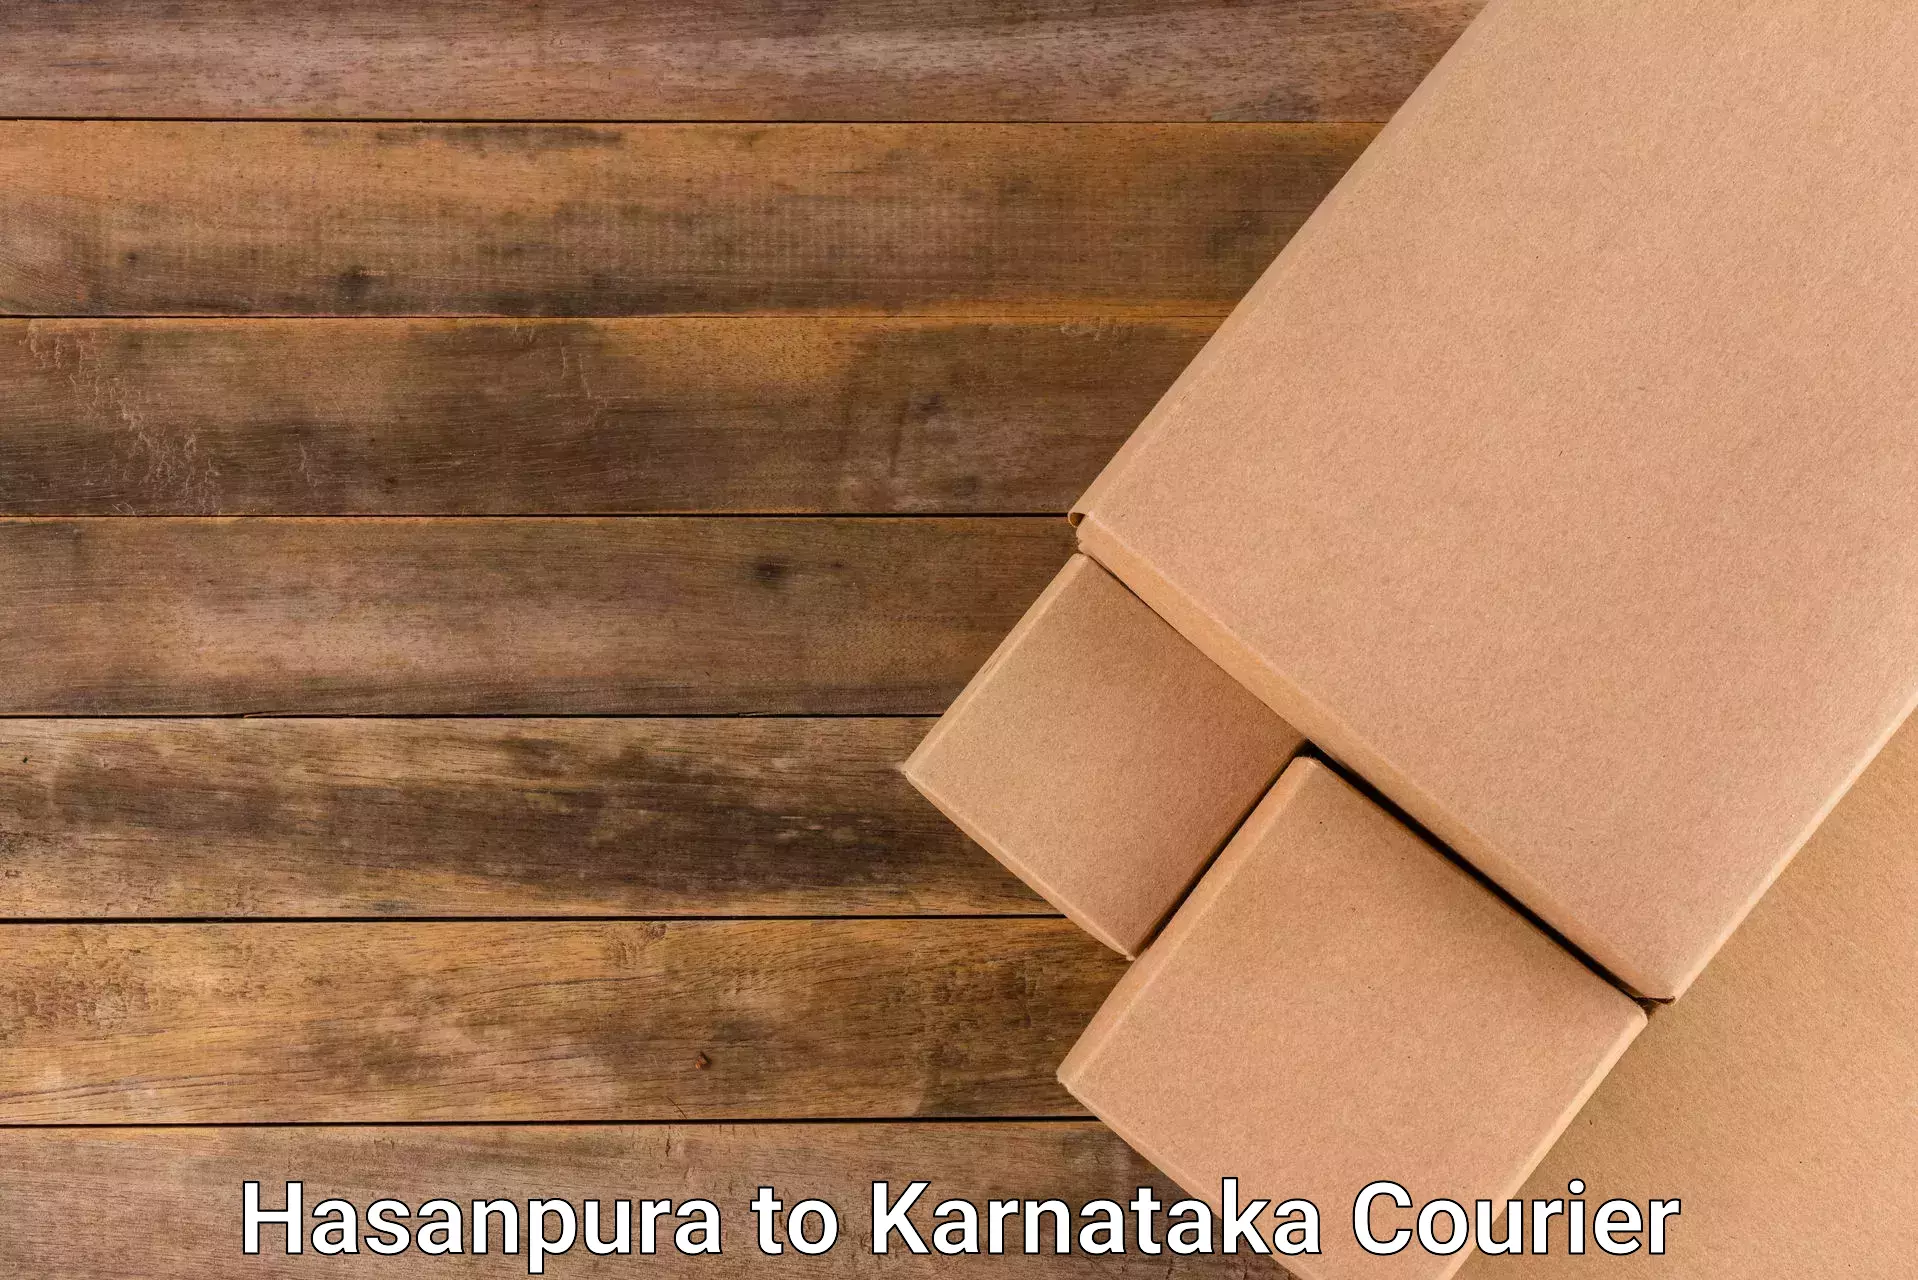 Return courier service Hasanpura to Yadgir